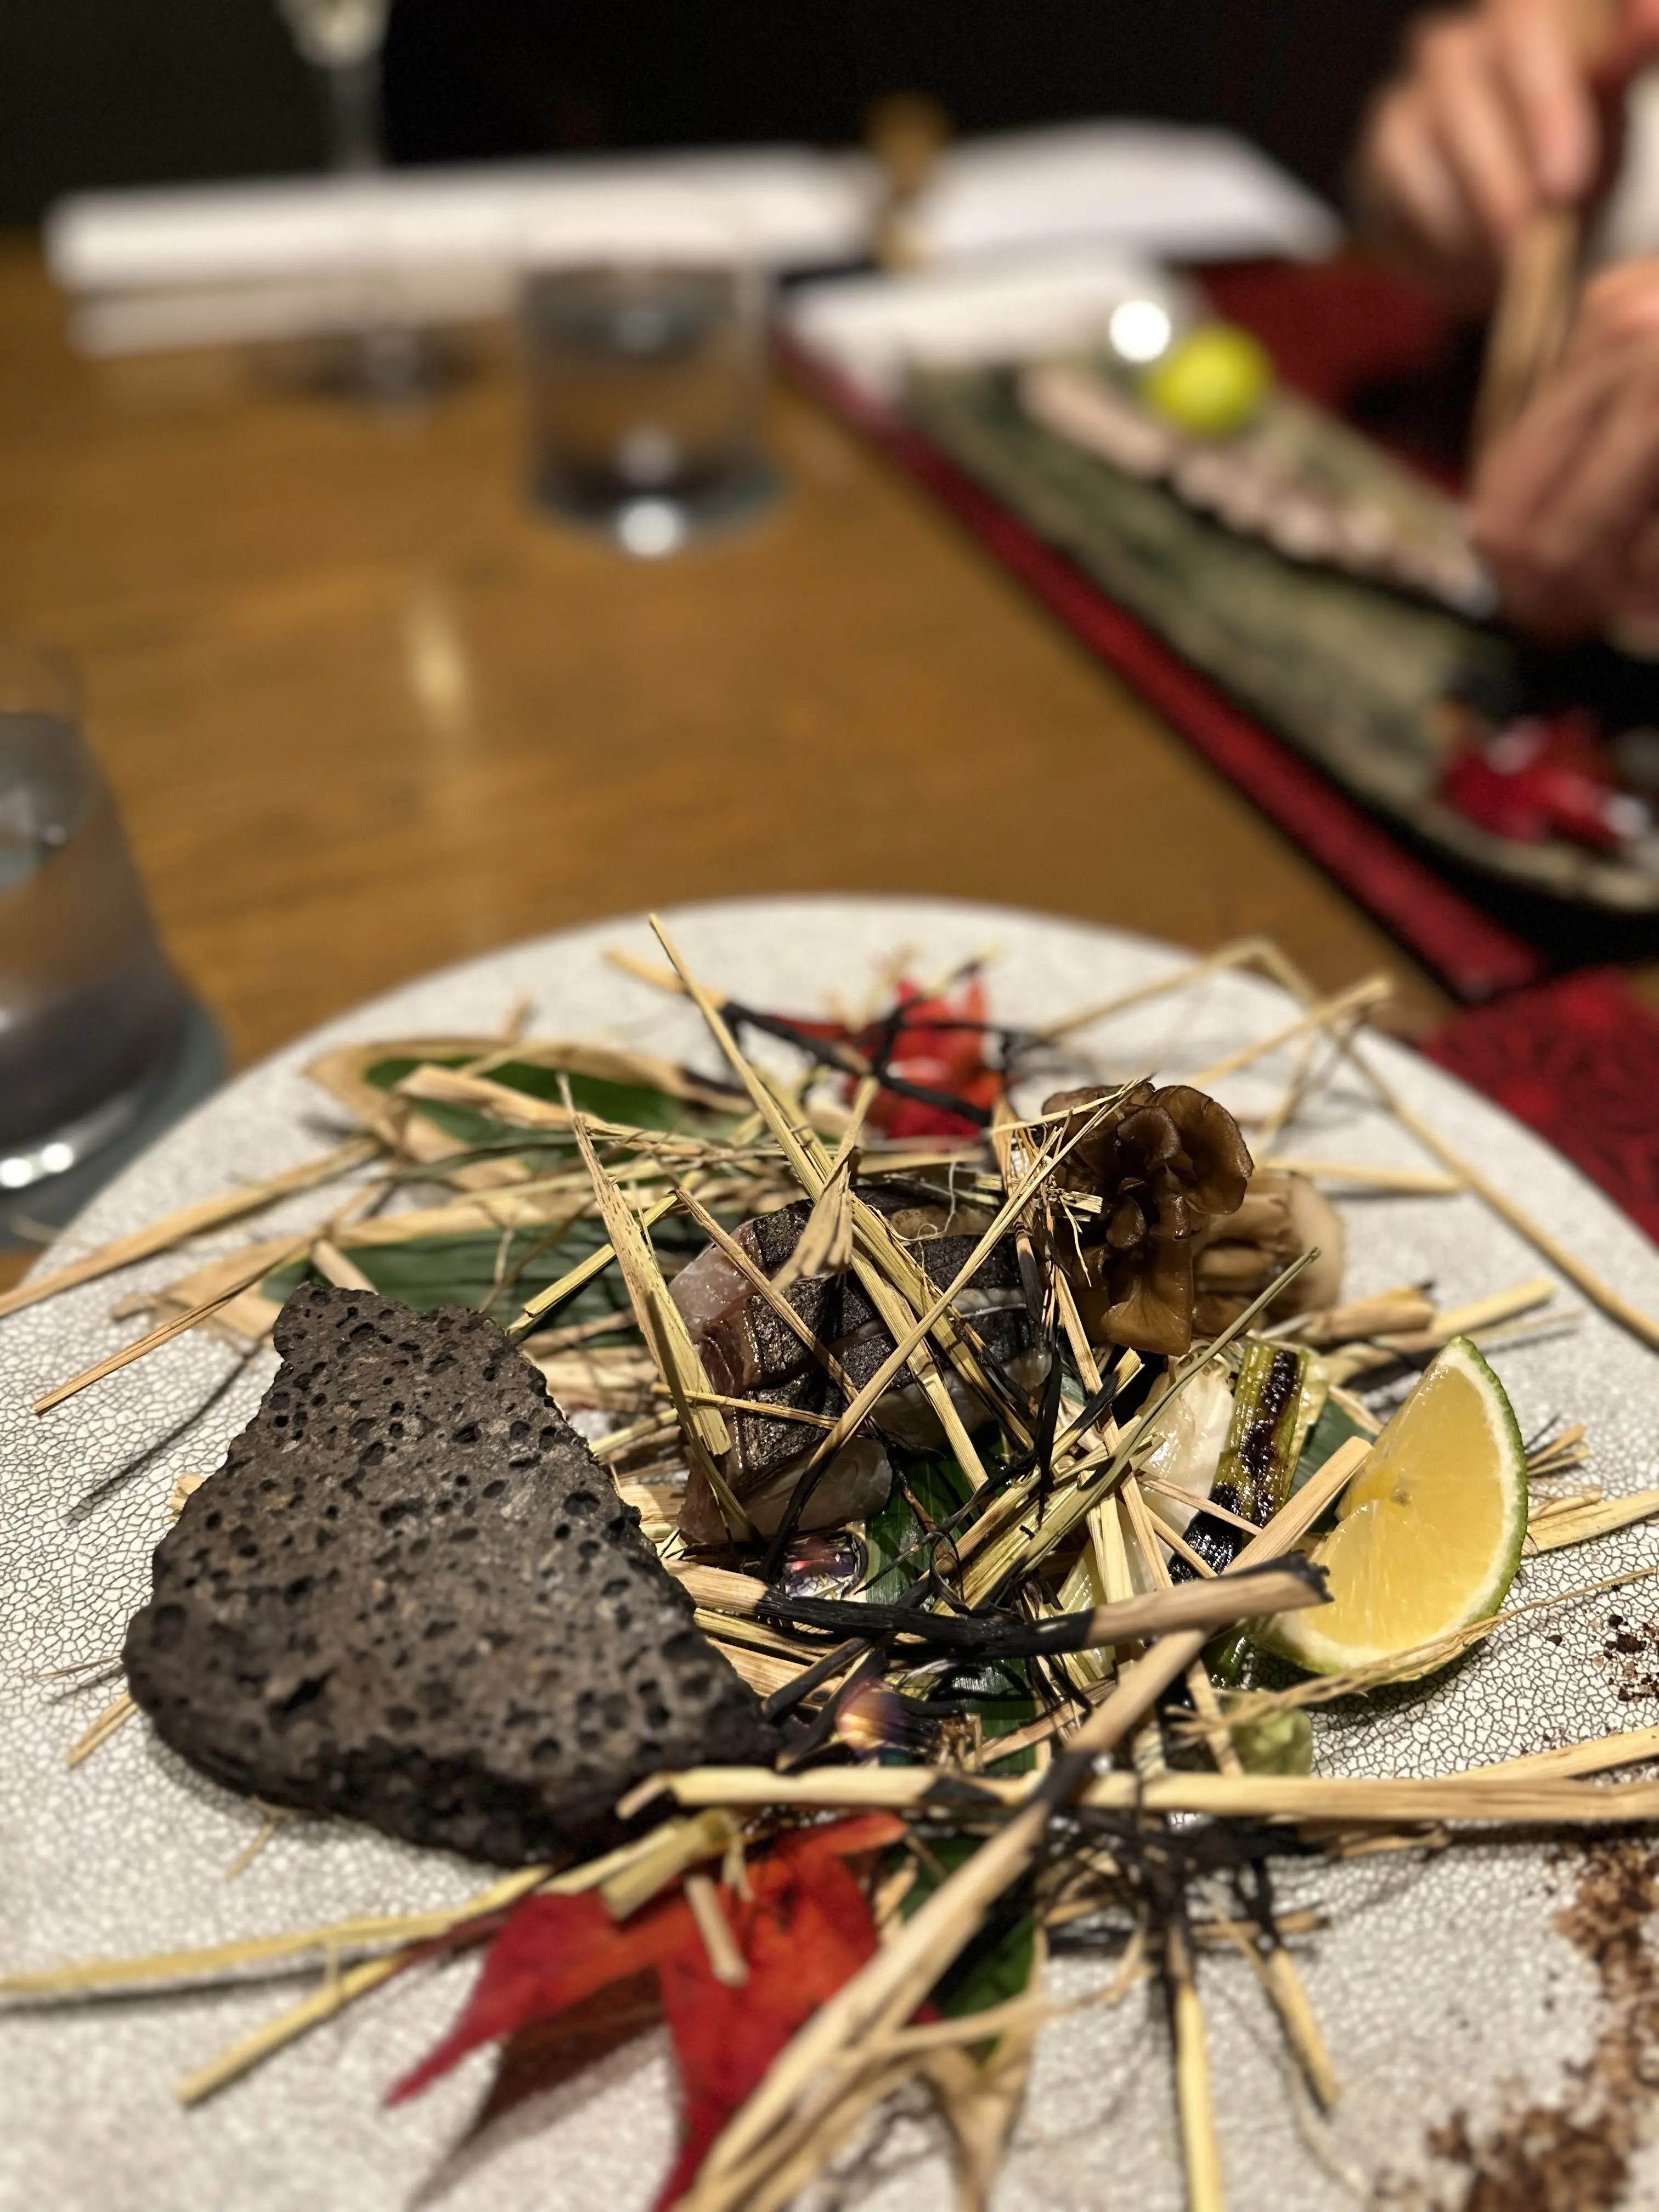 1月開業した『ふふ箱根』で、日本料理を堪能【箱根旅行①】_1_6